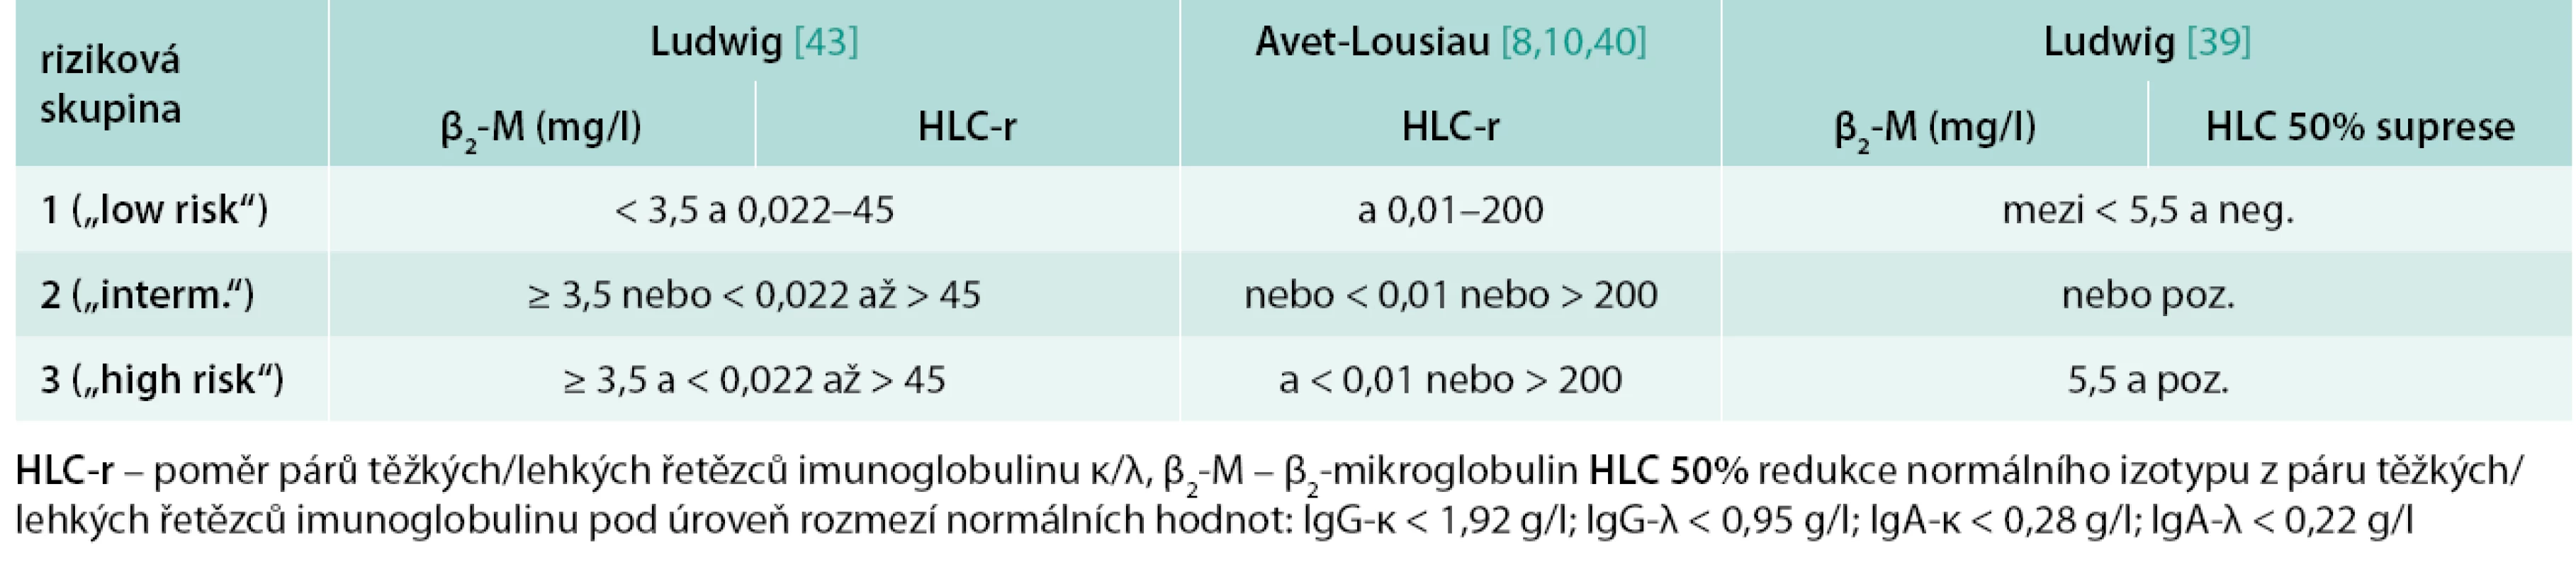 Stratifikační modely mnohočetného myelomu dle Ludwiga [43] a podle Avet-Lousiaua/Bradwella [8,10,40], založené na hodnotách β&lt;sub&gt;2&lt;/sub&gt;-mikroglobulinu a poměru párů těžkých/lehkých řetězců imunoglobulinu (HLC-κ/HLC-λ), a podle Ludwiga [39] založené na hodnotách β&lt;sub&gt;2&lt;/sub&gt;-mikroglobulinu a hodnocení 50% suprese normálního izotypu z páru těžkých/lehkých řetězců imunoglobulinu pod úroveň normálního rozmezí, rozdělující nemocné do 3 rizikových skupin.